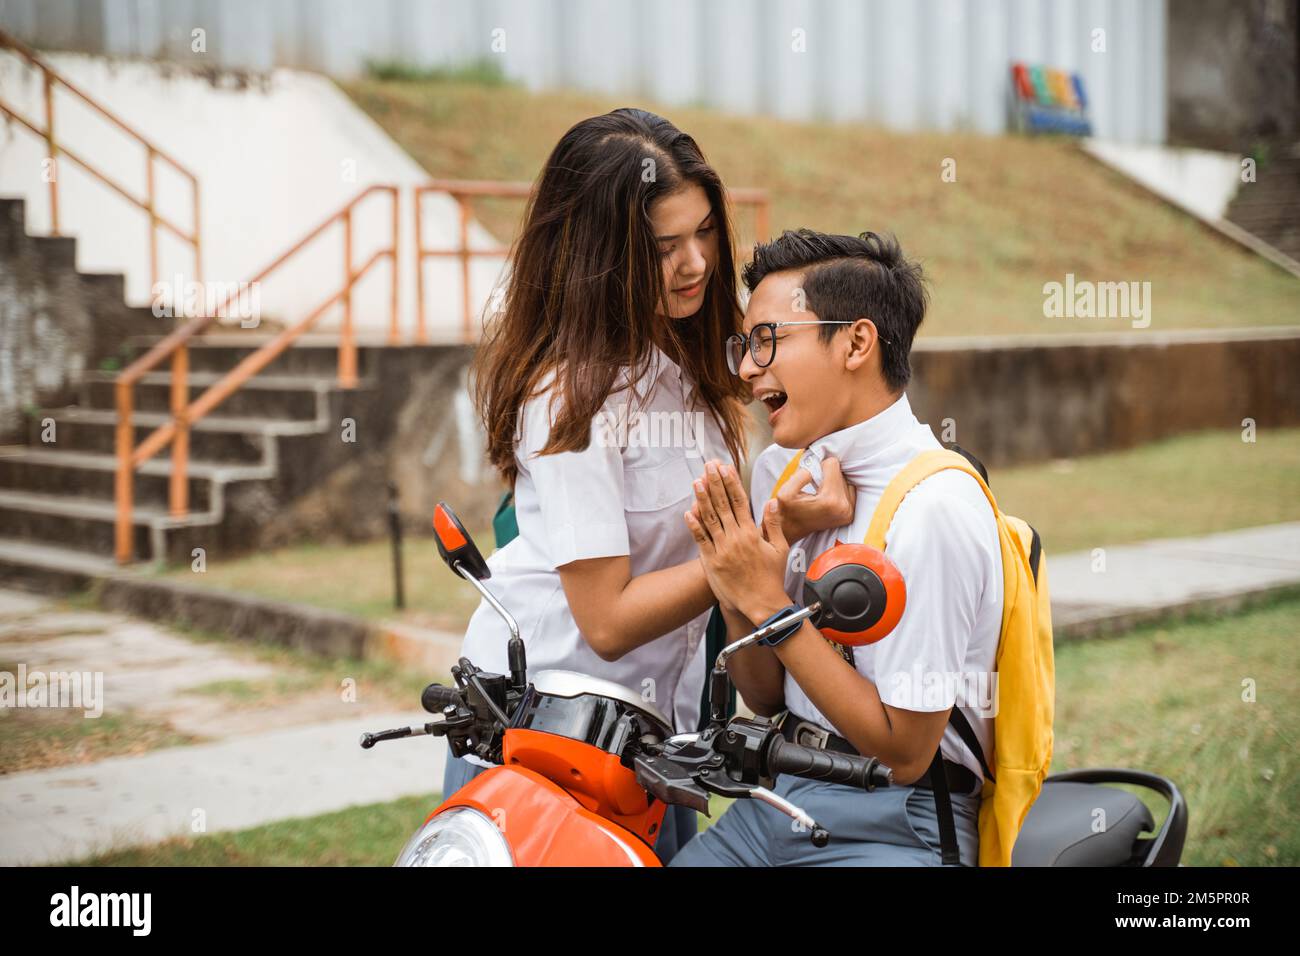 Tomboy-Mädchen-Schülerin fordert einen Jungen-Schüler heraus, während er Motorrad fährt Stockfoto